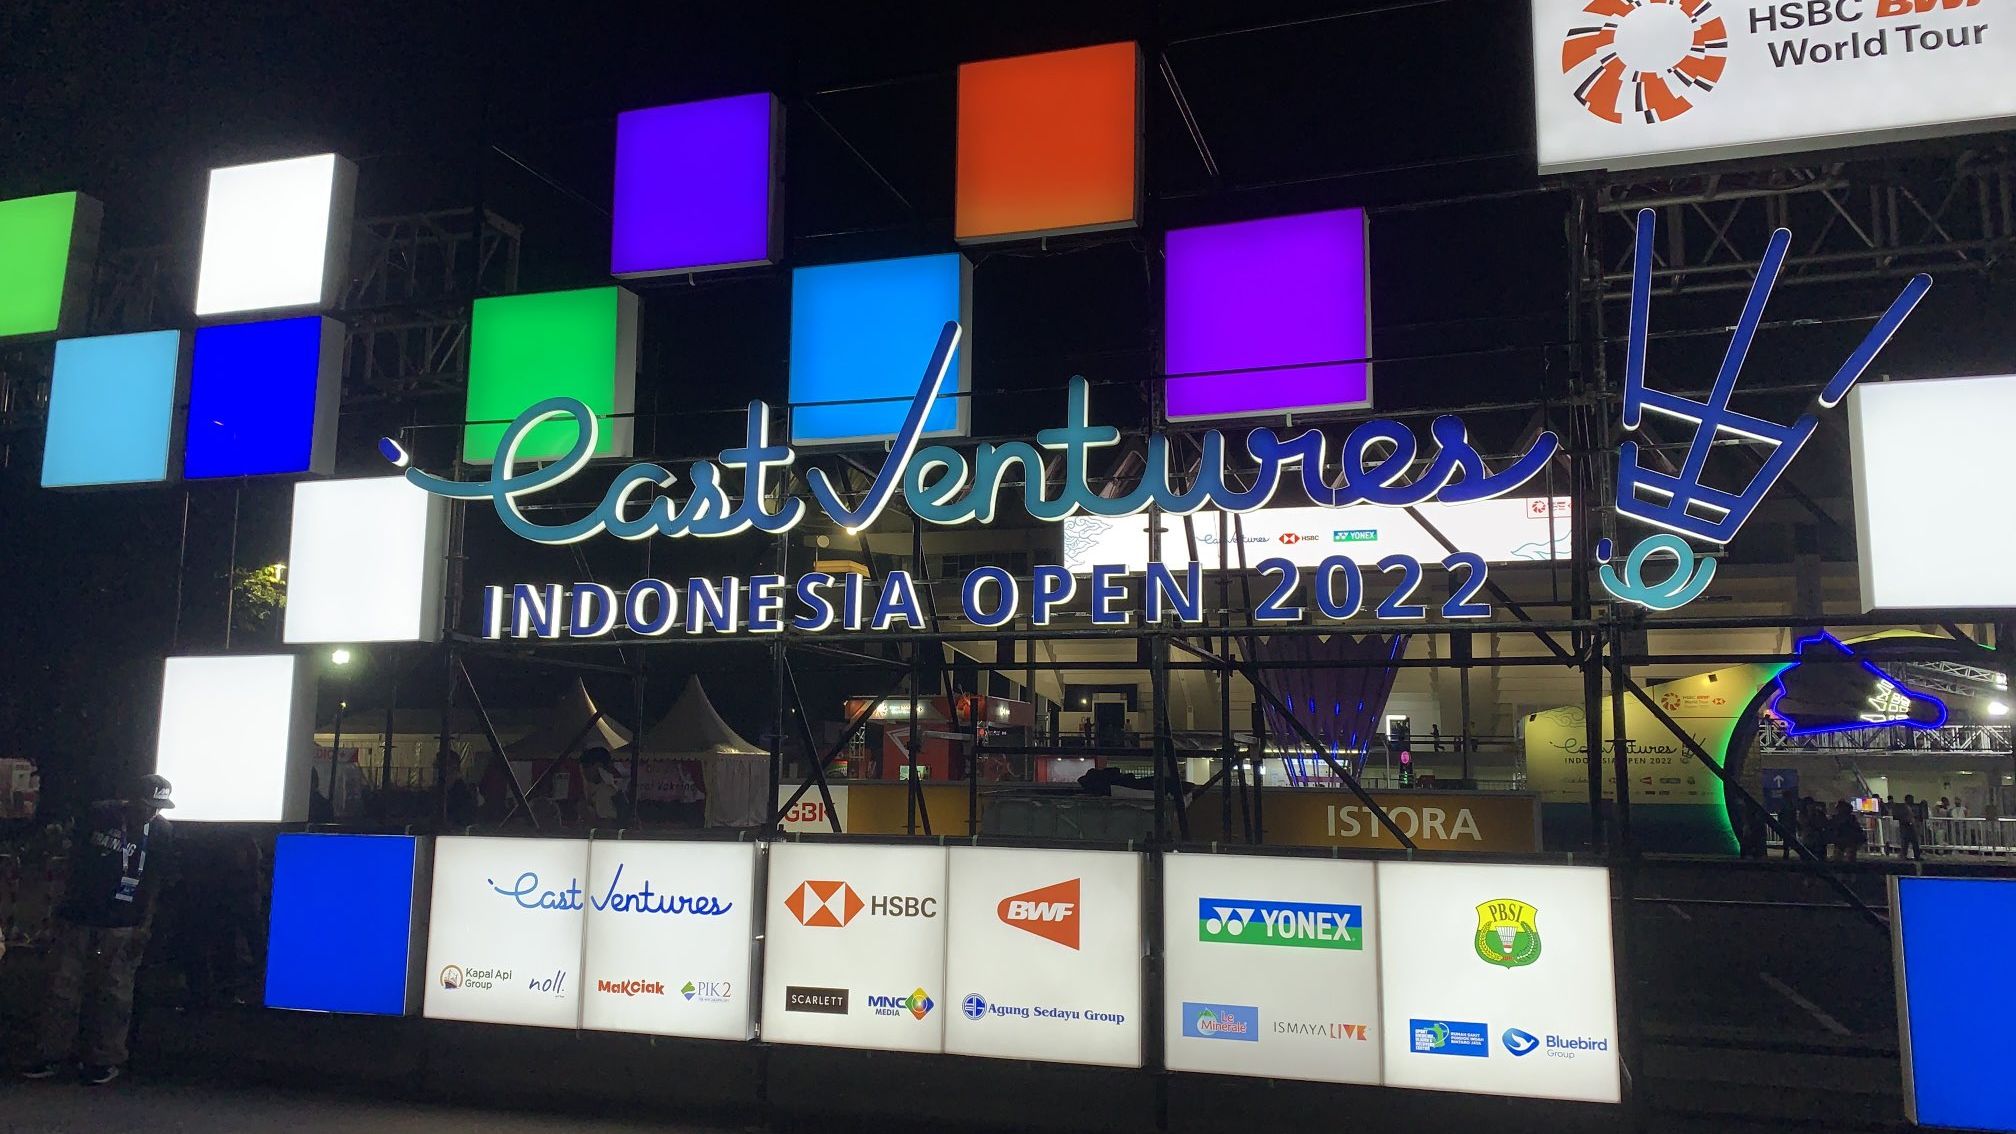 Turnamen BWF Level Super 1000, East Ventures Indonesia Open 2022 diselenggarakan di Istora Senayan, Jakarta, 14-19 Juni 2022.